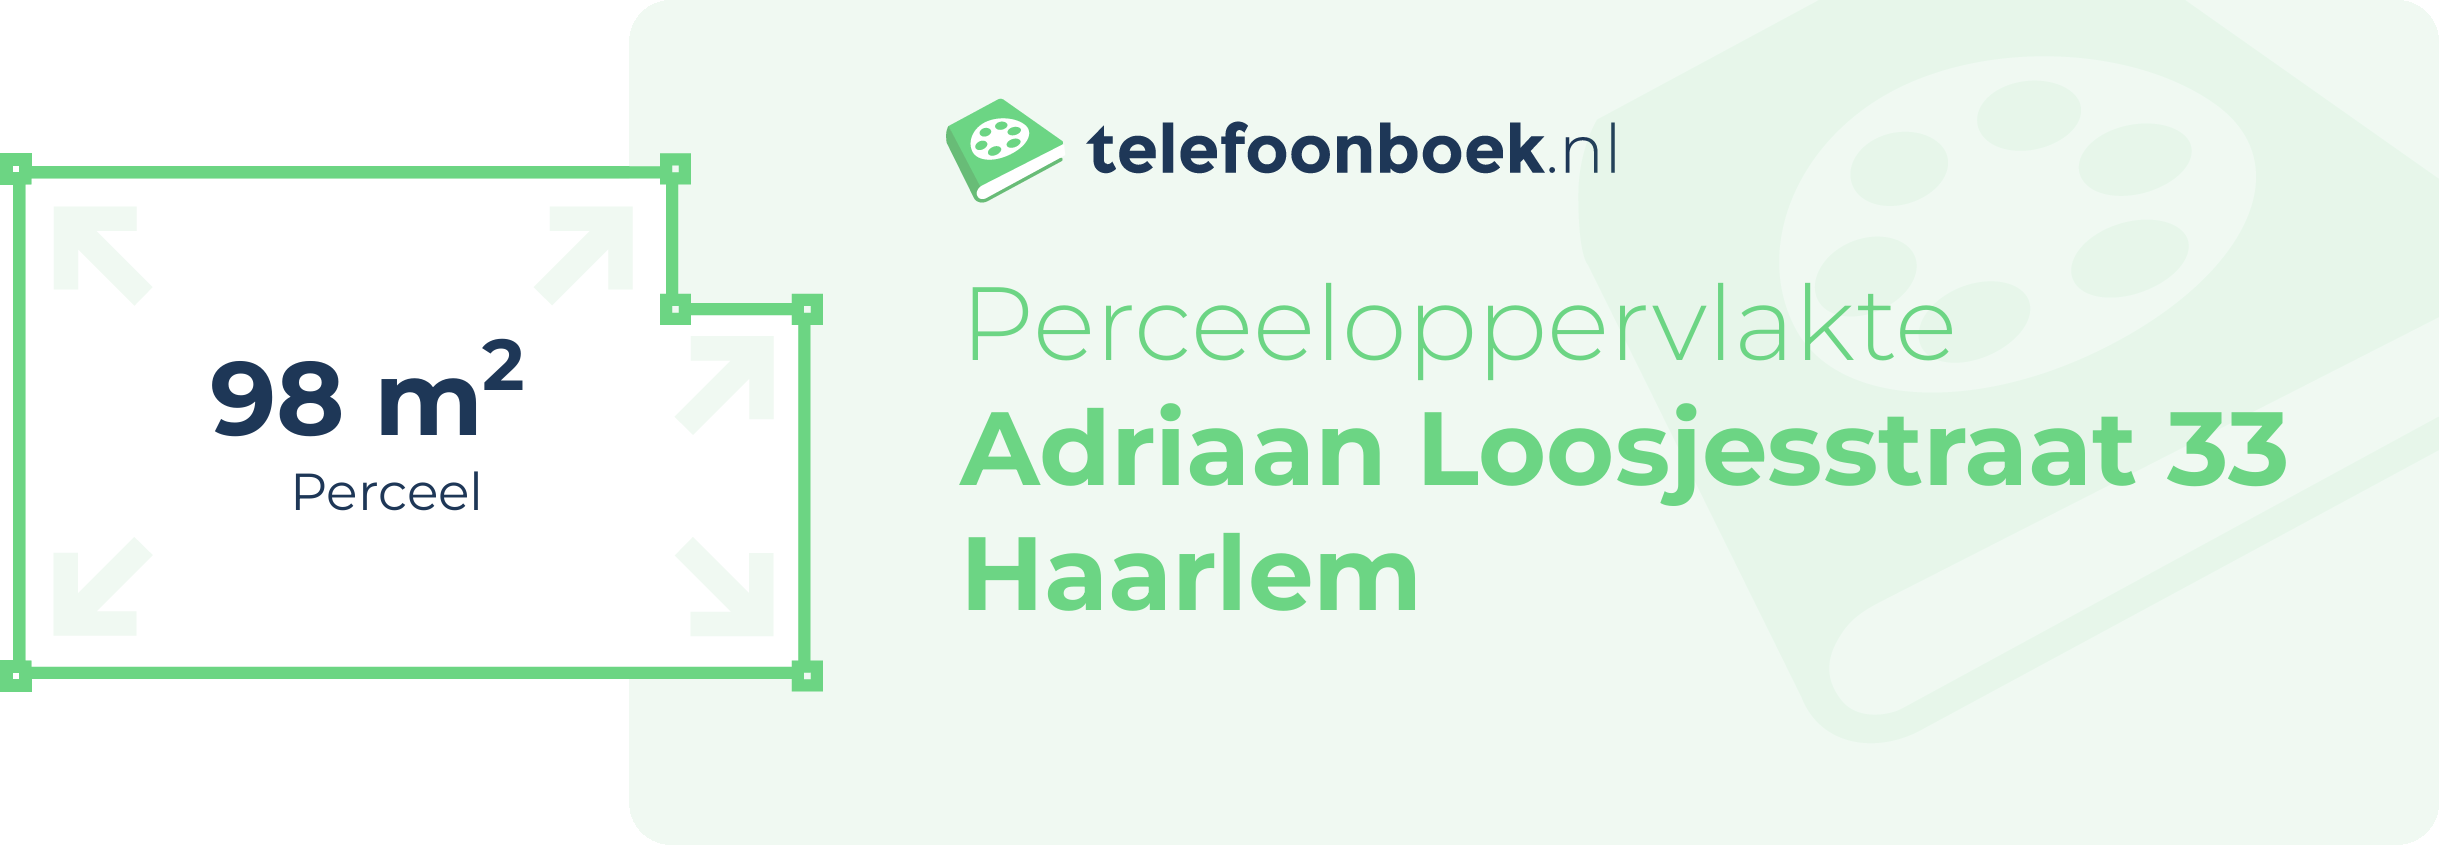 Perceeloppervlakte Adriaan Loosjesstraat 33 Haarlem